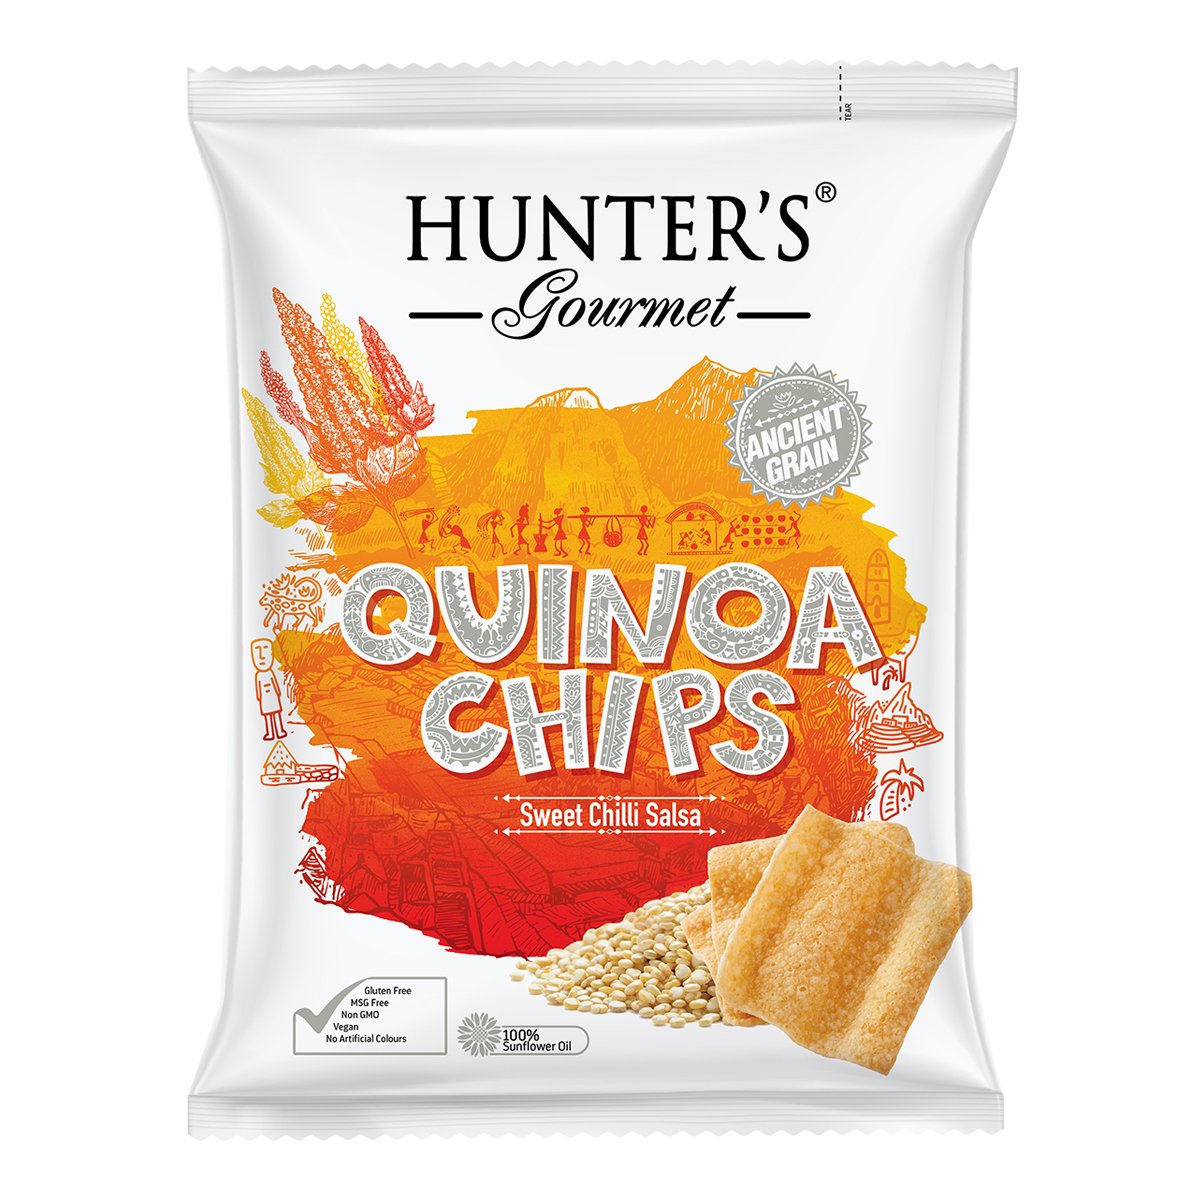 HUNTER'S GOURMET Quinoa Chips - Sweet Chilli Salsa, 75g